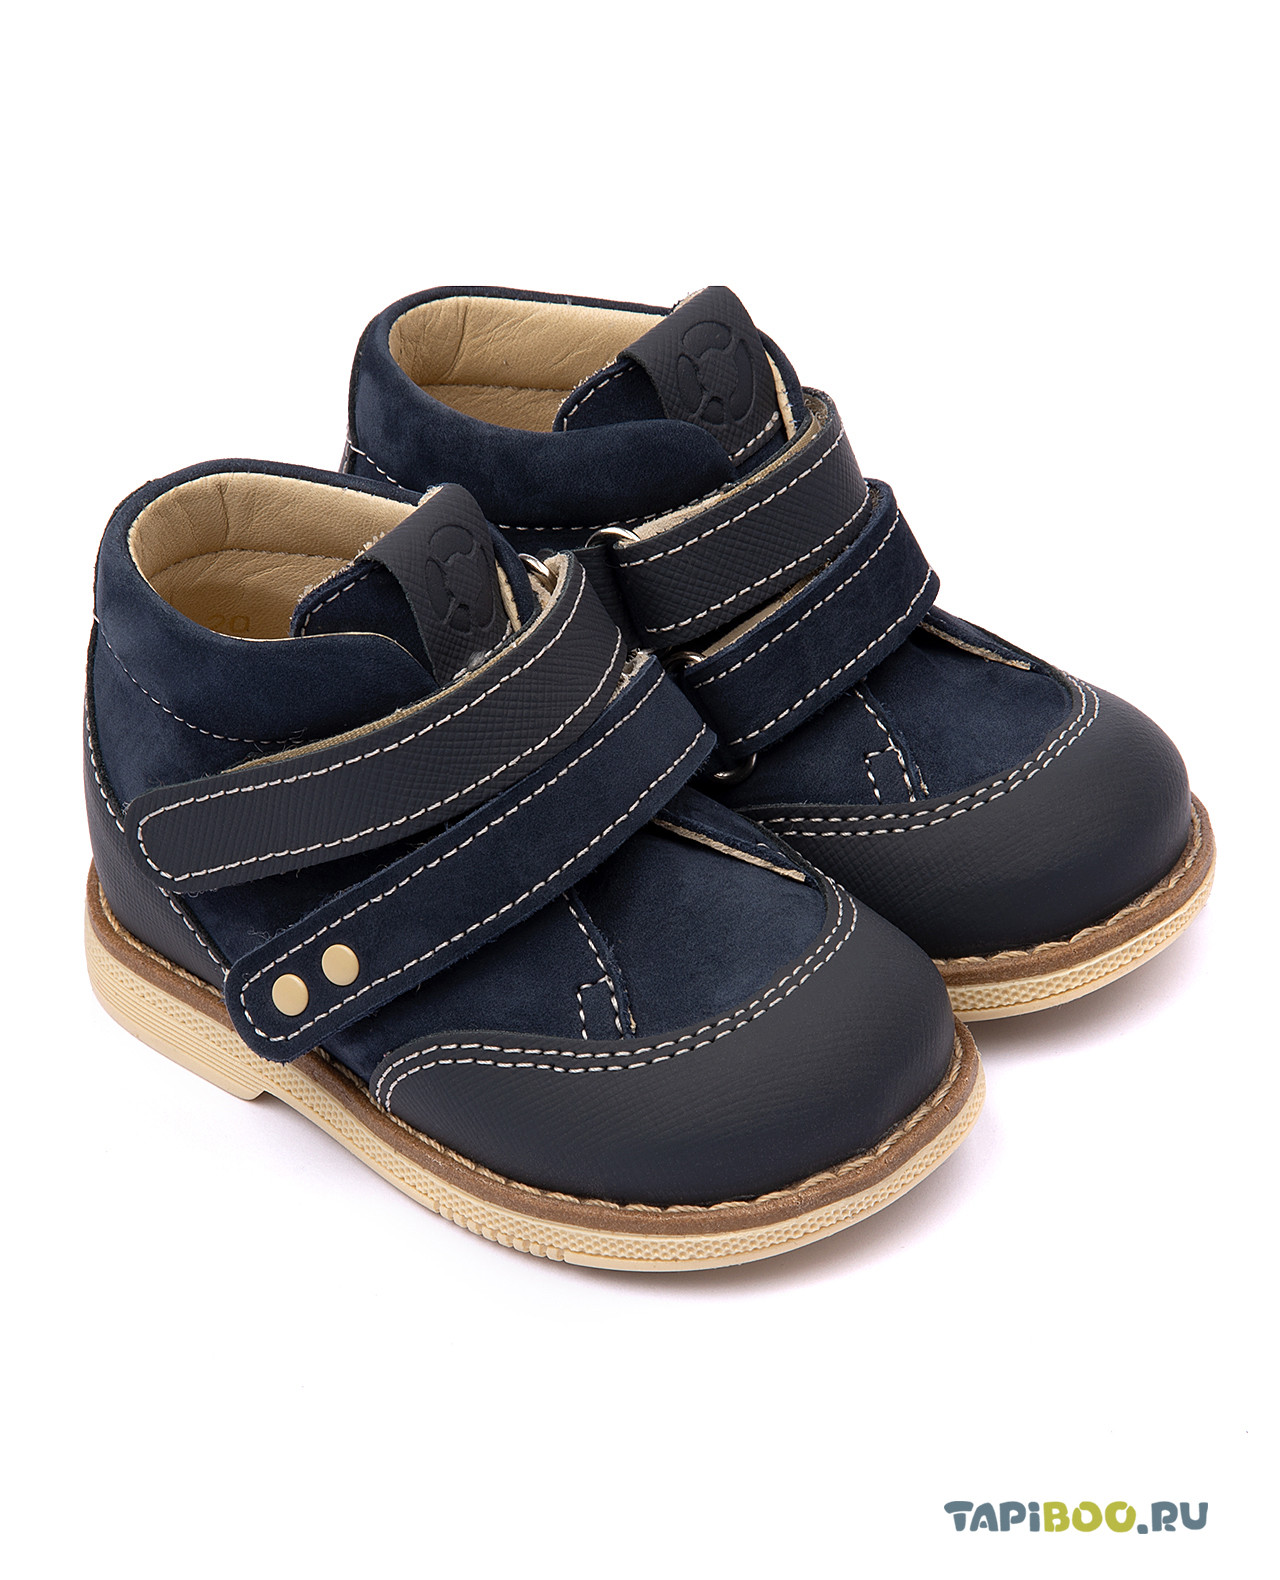 Ботинки детские Tapiboo ИРИС (72898, 23) ботинки детские tapiboo исландия 75119 29